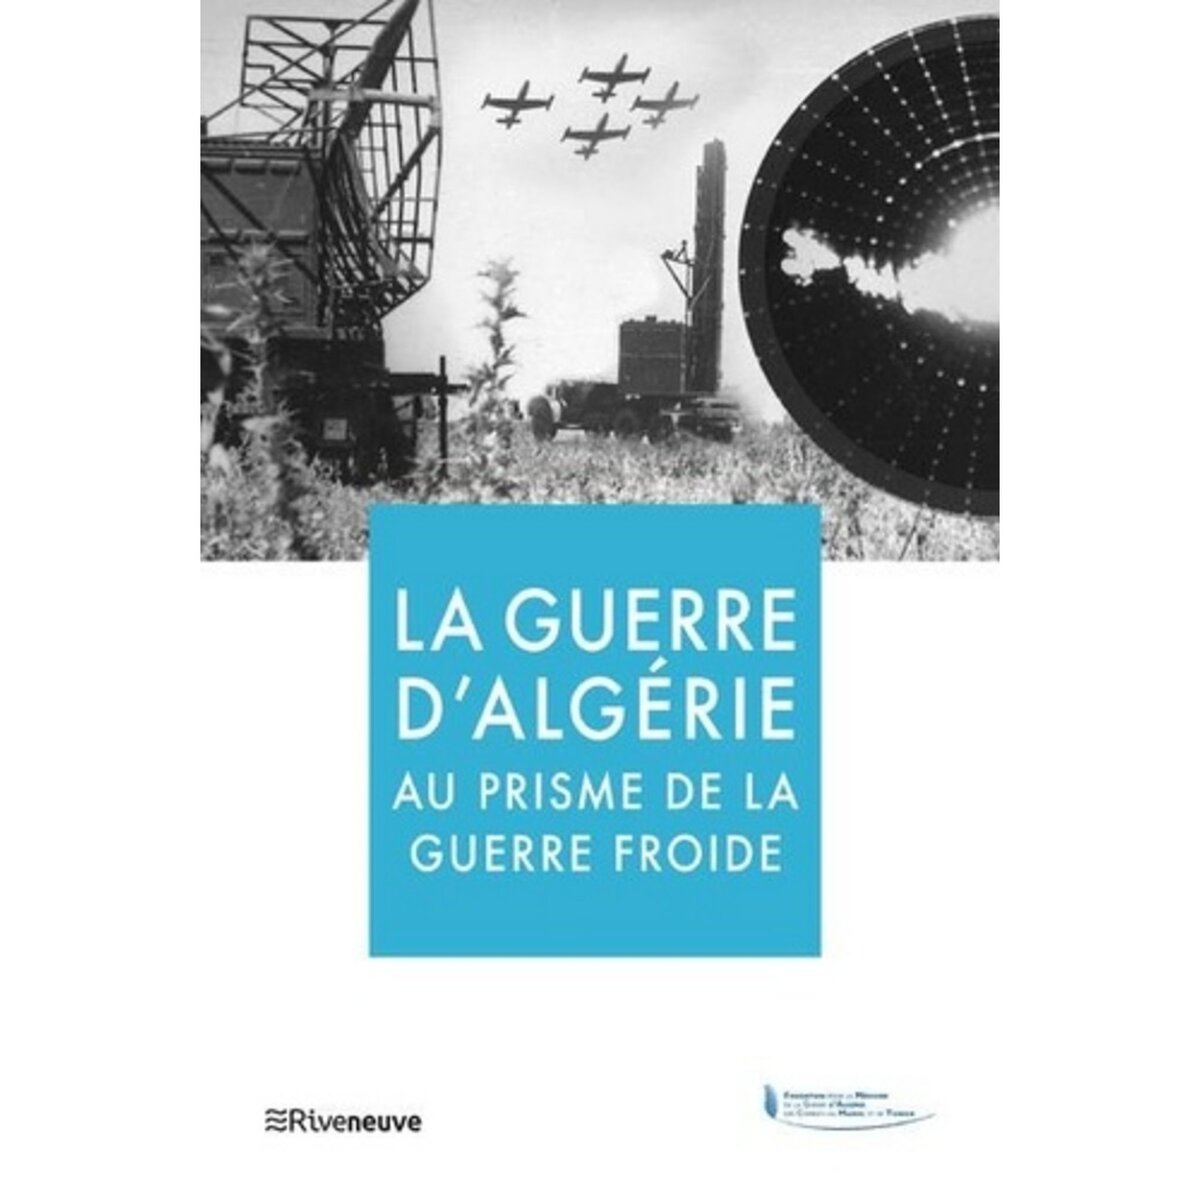  LA GUERRE D'ALGERIE AU PRISME DE LA GUERRE FROIDE, Grasset Frédéric